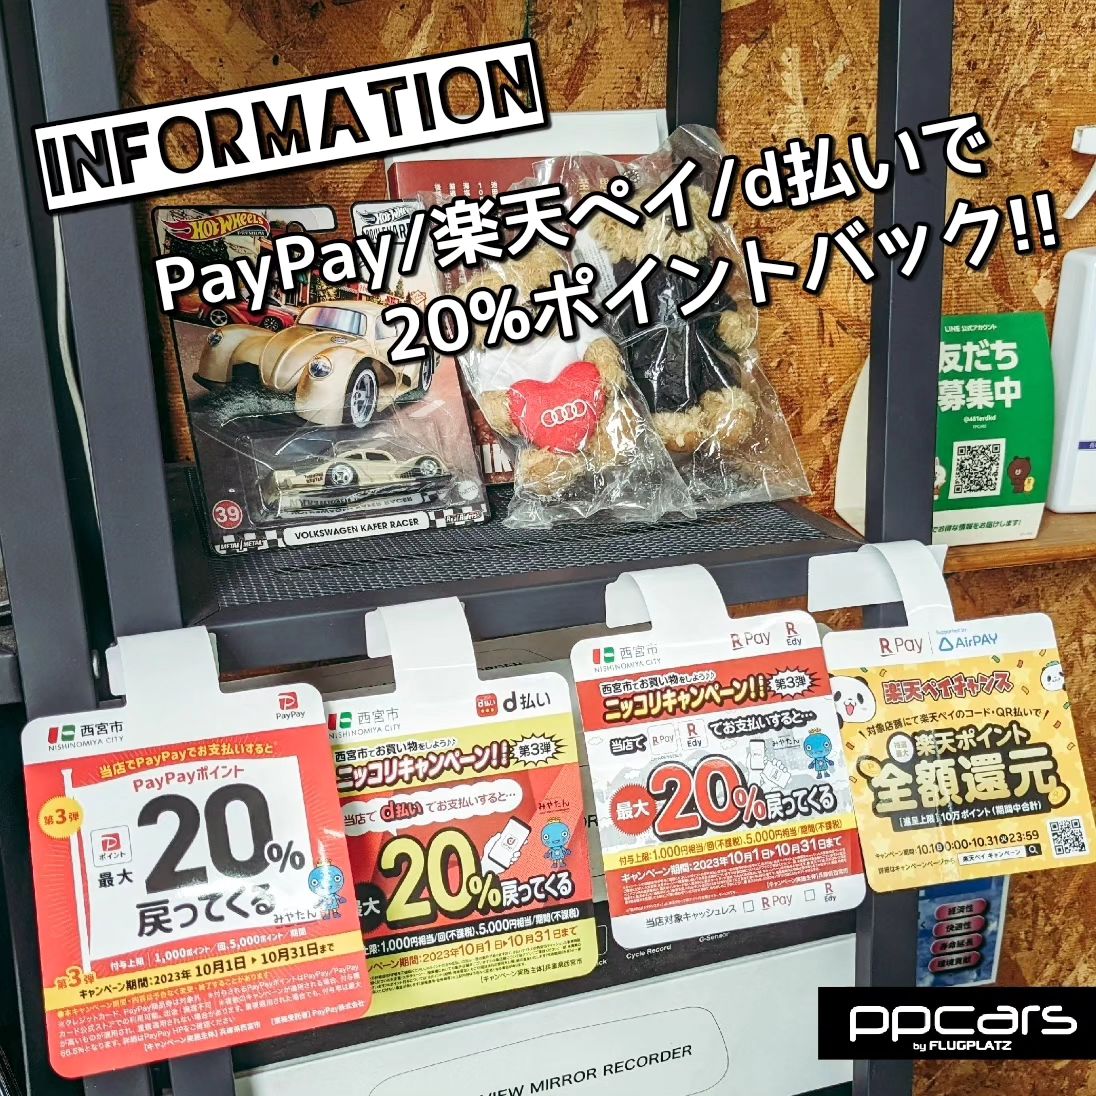 PayPay/楽天ペイ/d払いのお支払いで最大20%ポイントバック!!